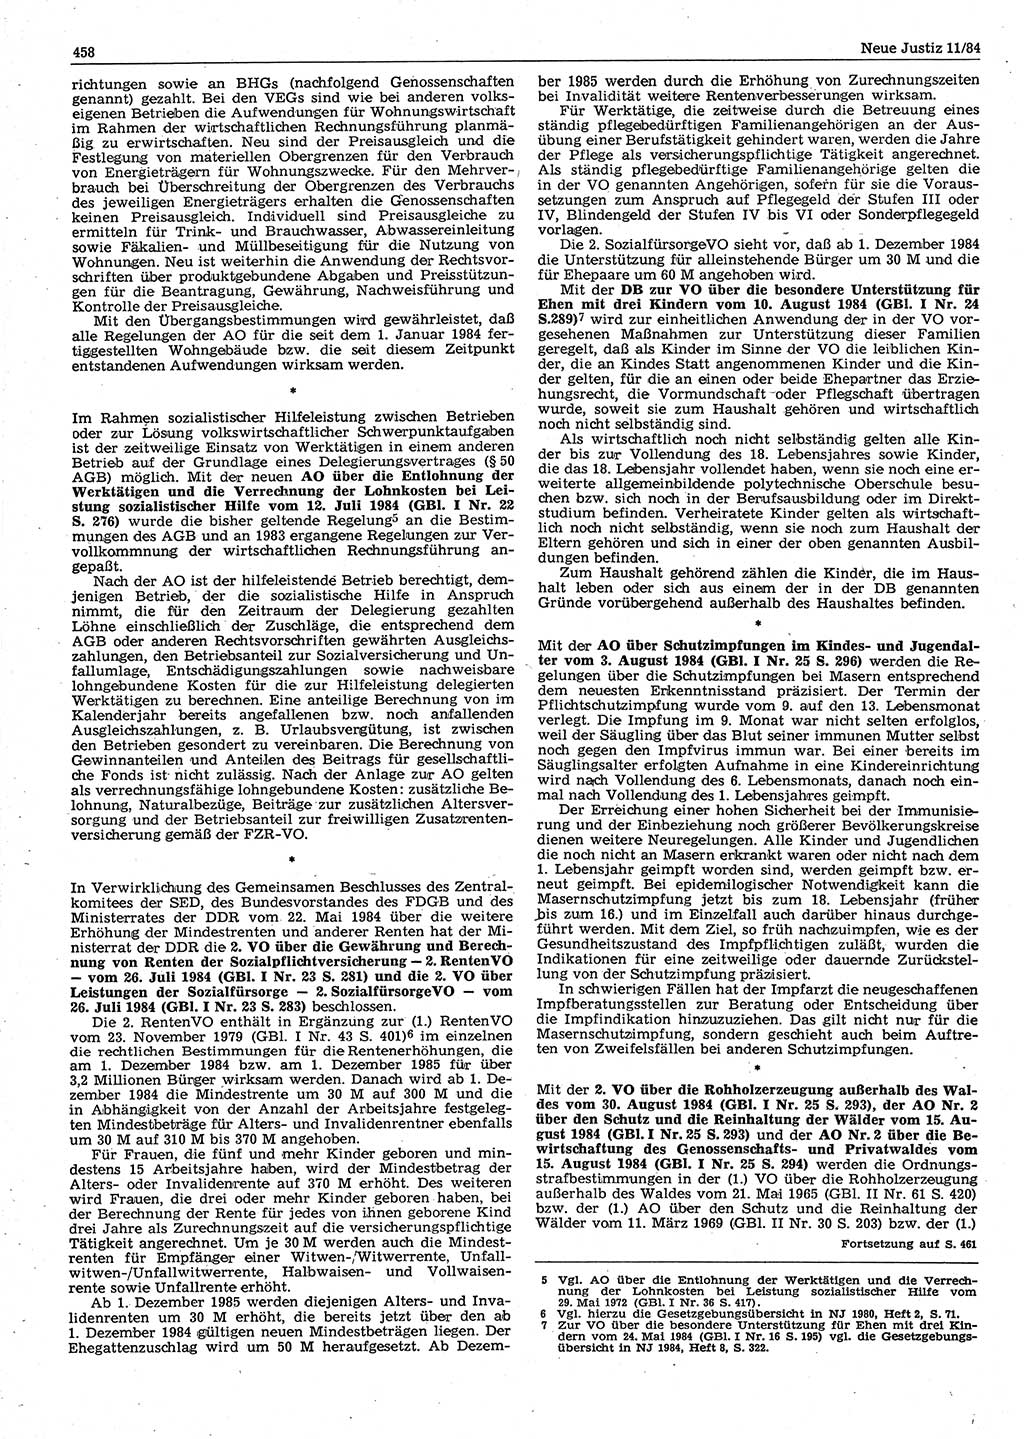 Neue Justiz (NJ), Zeitschrift für sozialistisches Recht und Gesetzlichkeit [Deutsche Demokratische Republik (DDR)], 38. Jahrgang 1984, Seite 458 (NJ DDR 1984, S. 458)